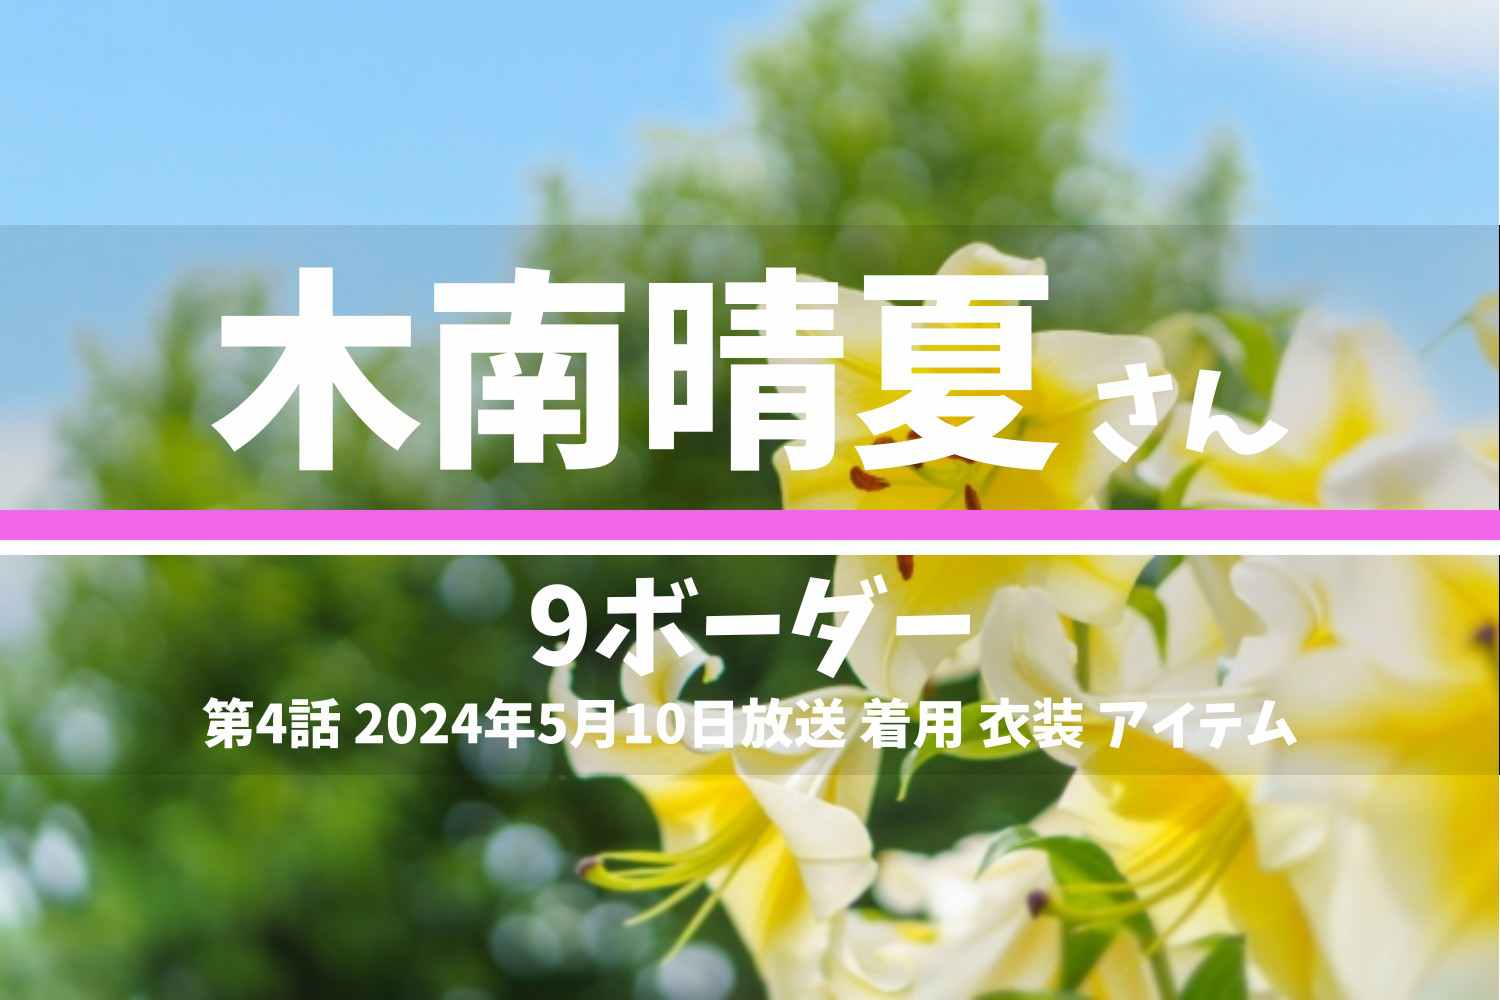 9ボーダー 木南晴夏さん テレビドラマ 衣装 2024年5月10日放送